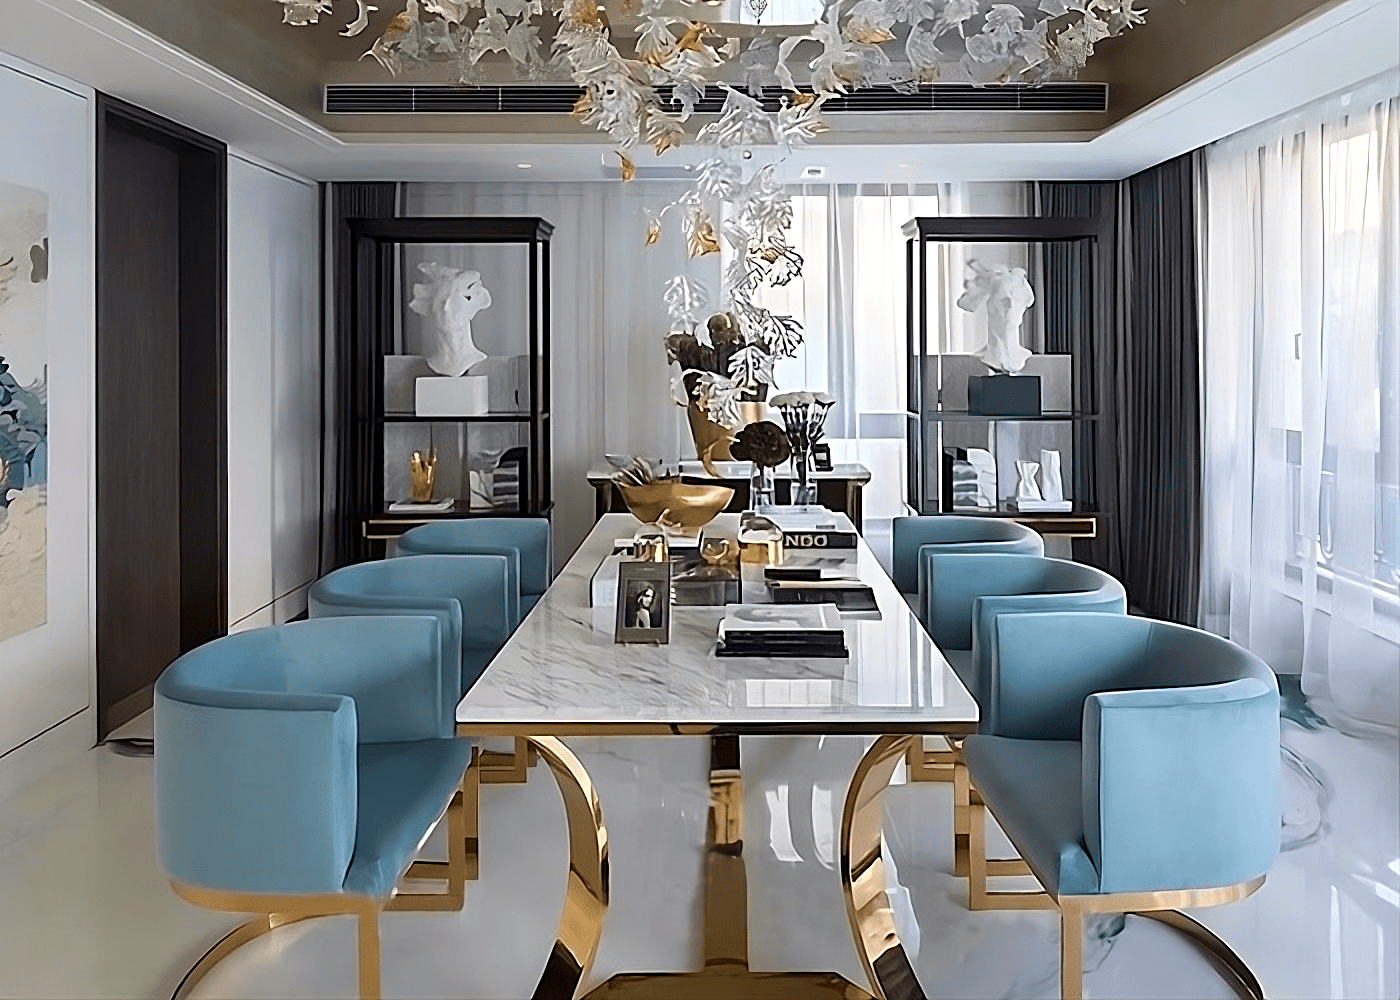 Mesa de Jantar Gregori seu design com linhas modernas proporciona requinte e elegância para a sala de jantar.